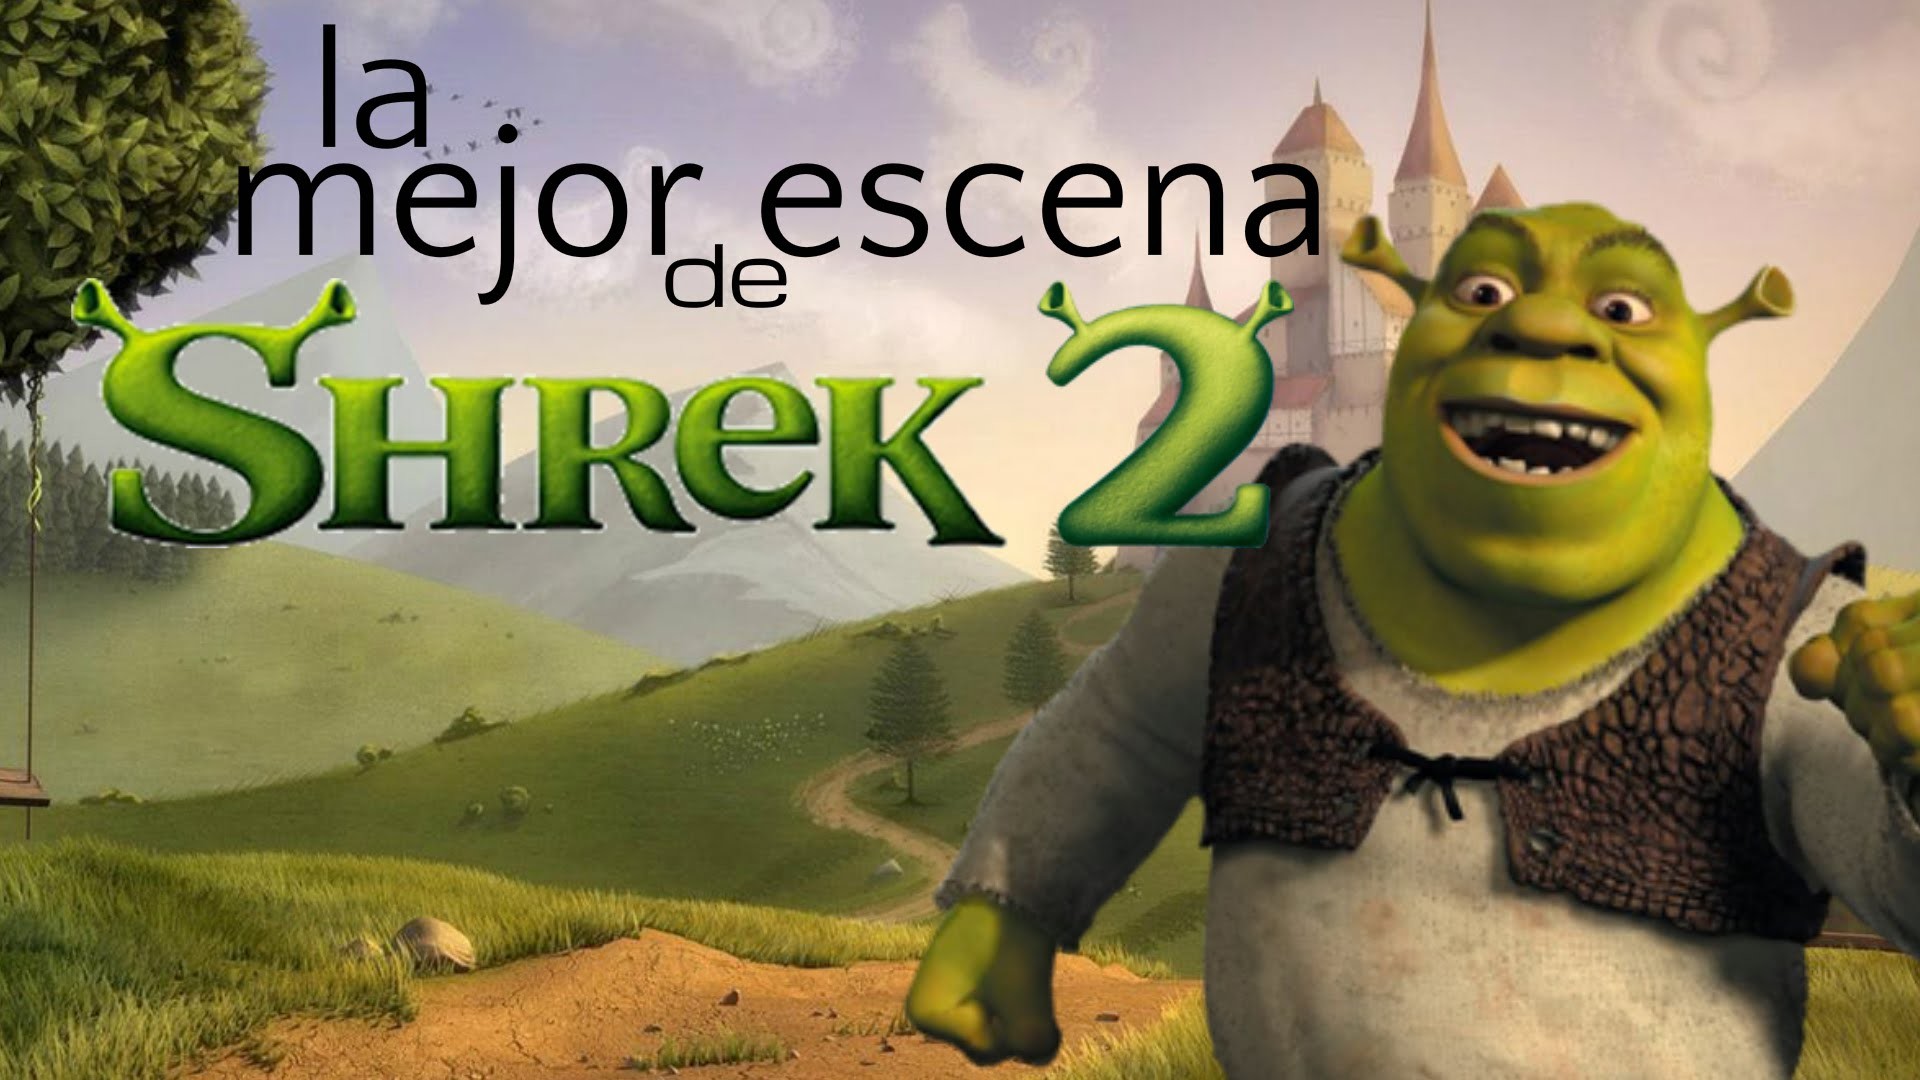 Shrek 2 Wallpaper.